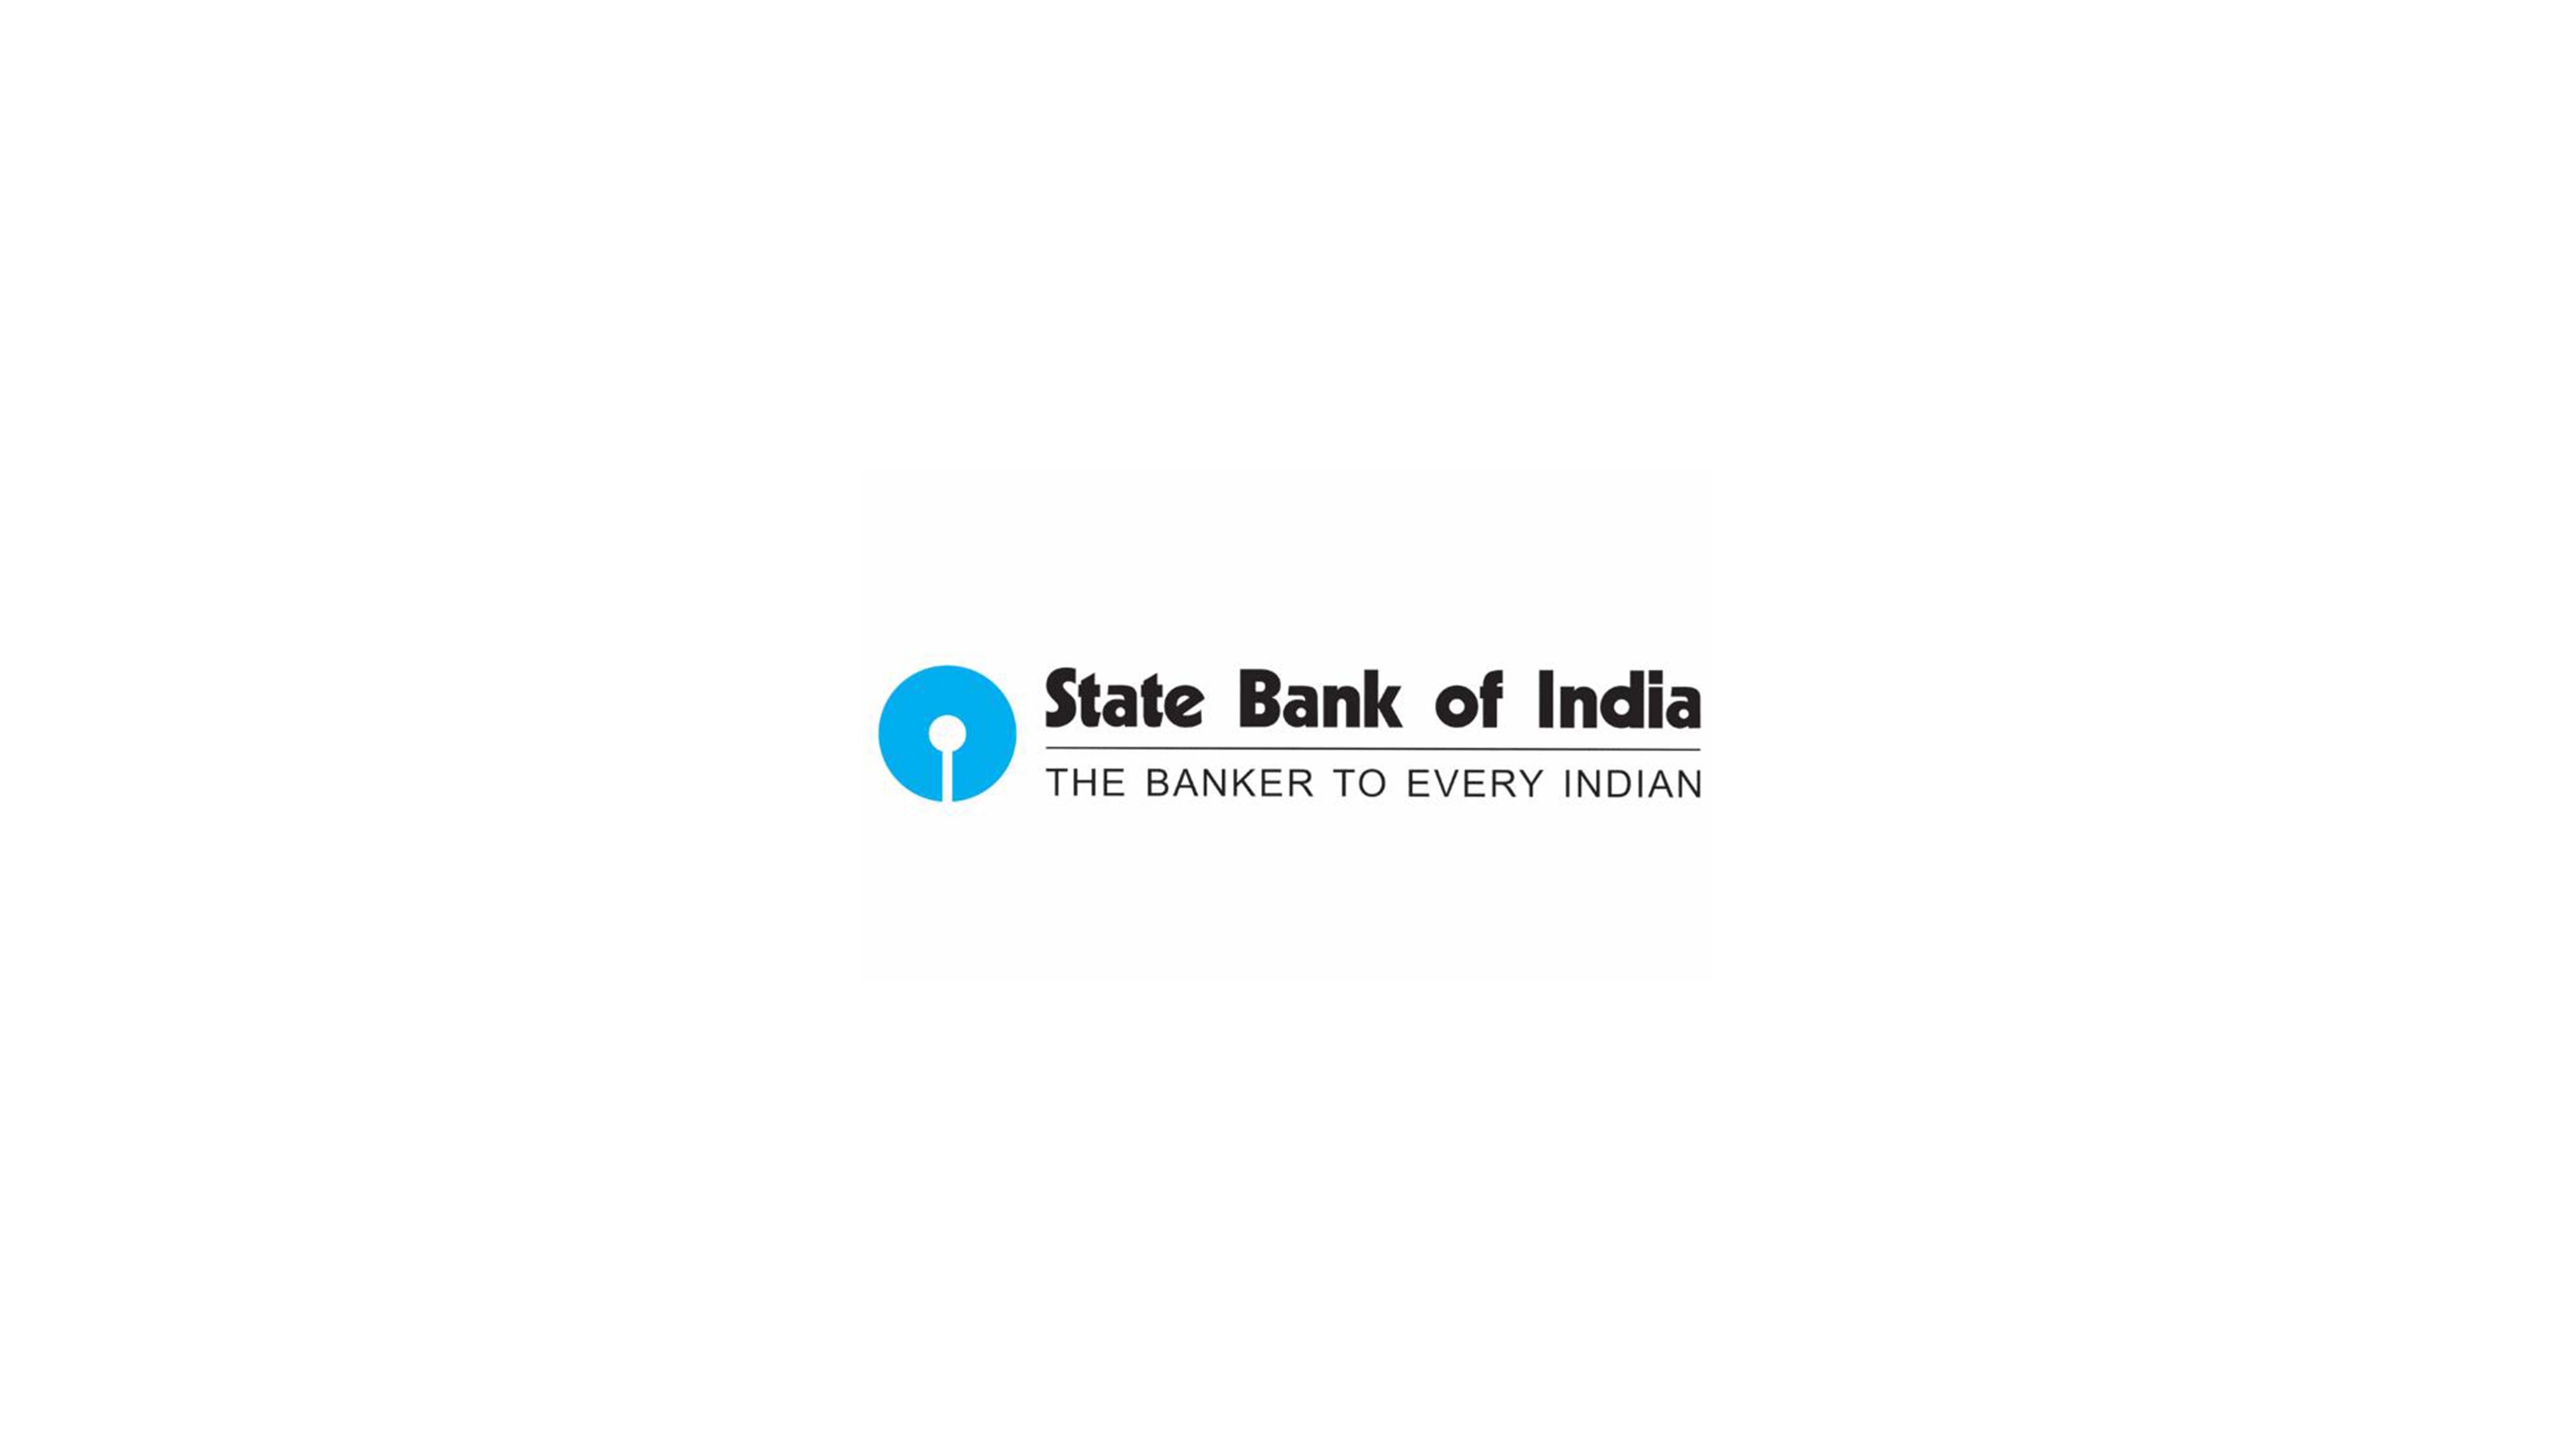 印度国家银行的历史LOGO